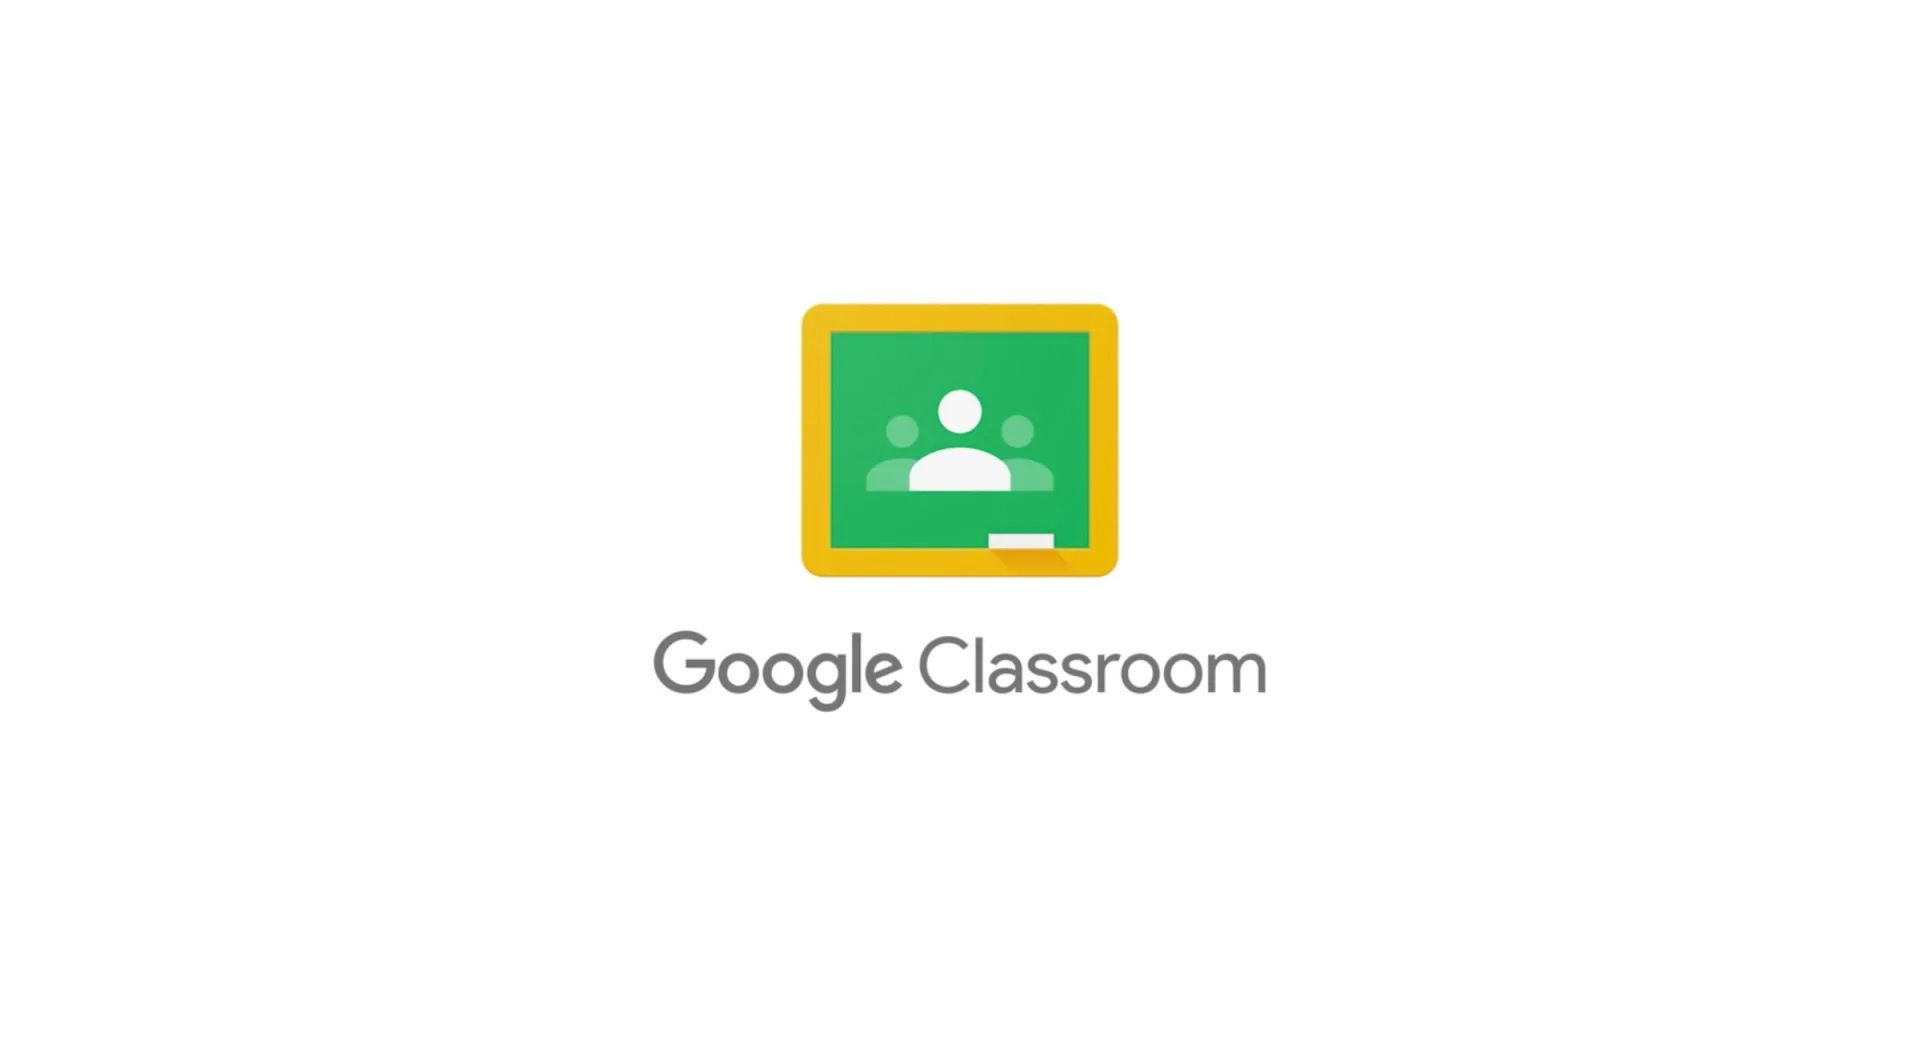 How to Make Google Classroom Dark Mode